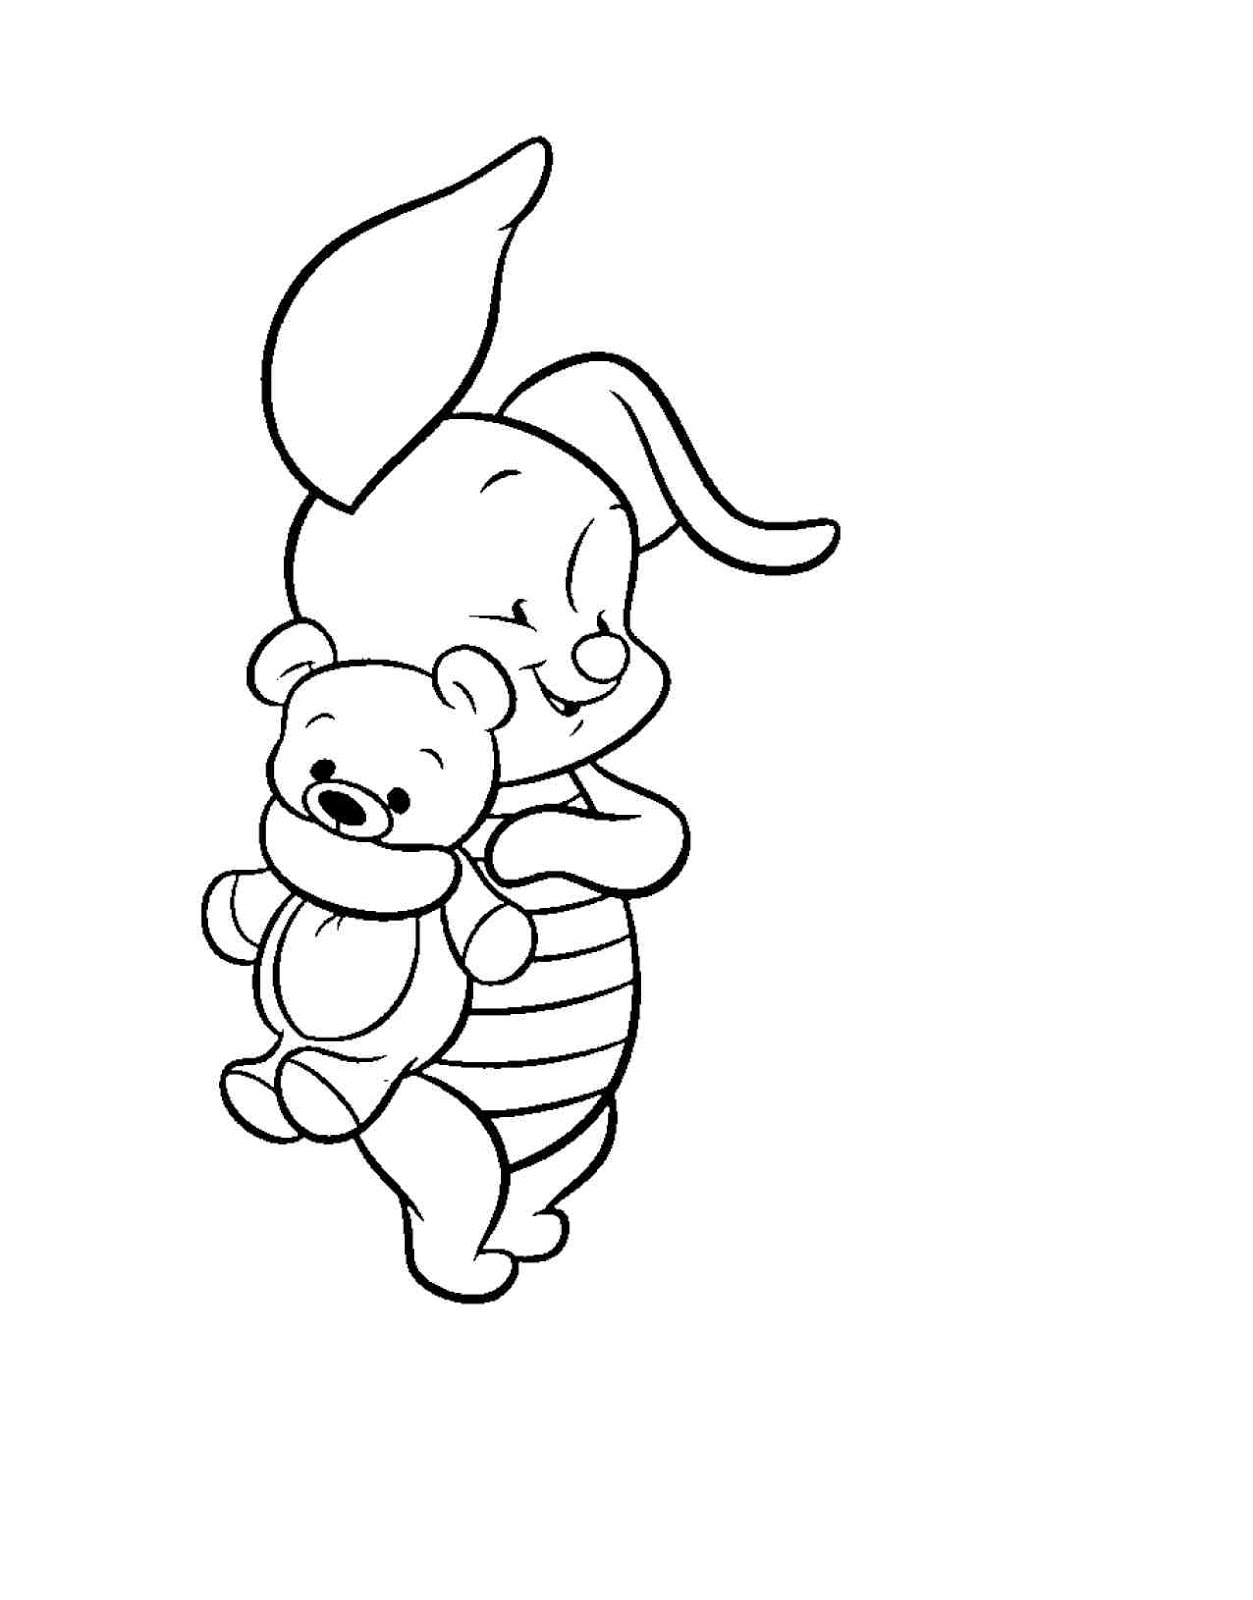 Colorear Tus Dibujos Imagenes Para Colorear Winnie The Pooh Disney